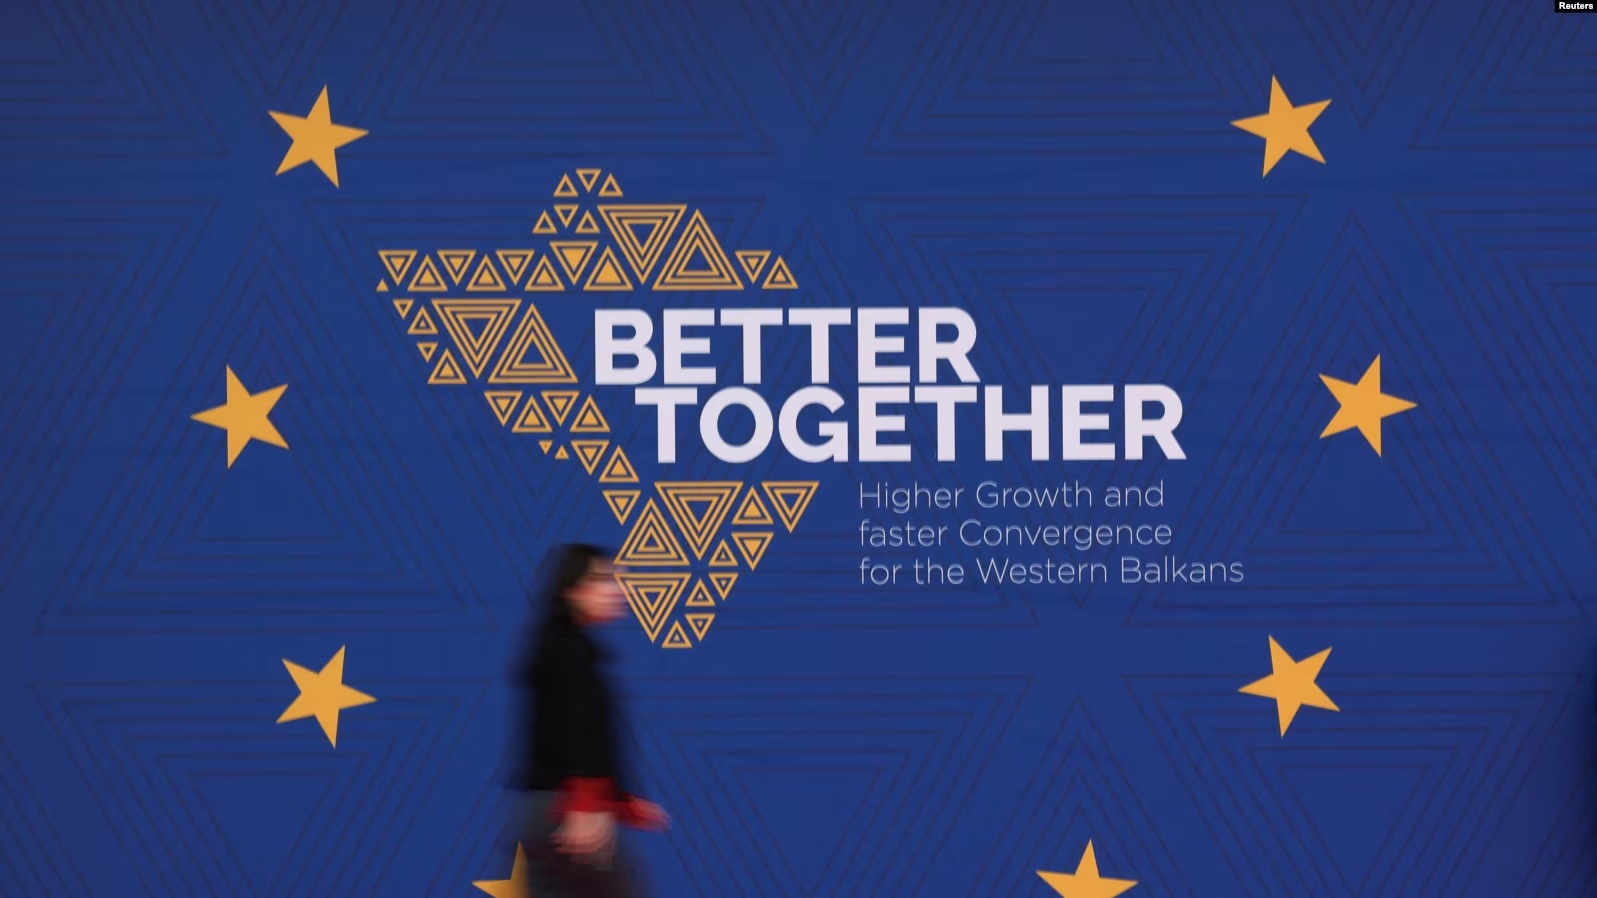 Më 29 shkurt në Tiranë është diskutuar për Planin e Rritjes për Ballkanin Perëndimor.